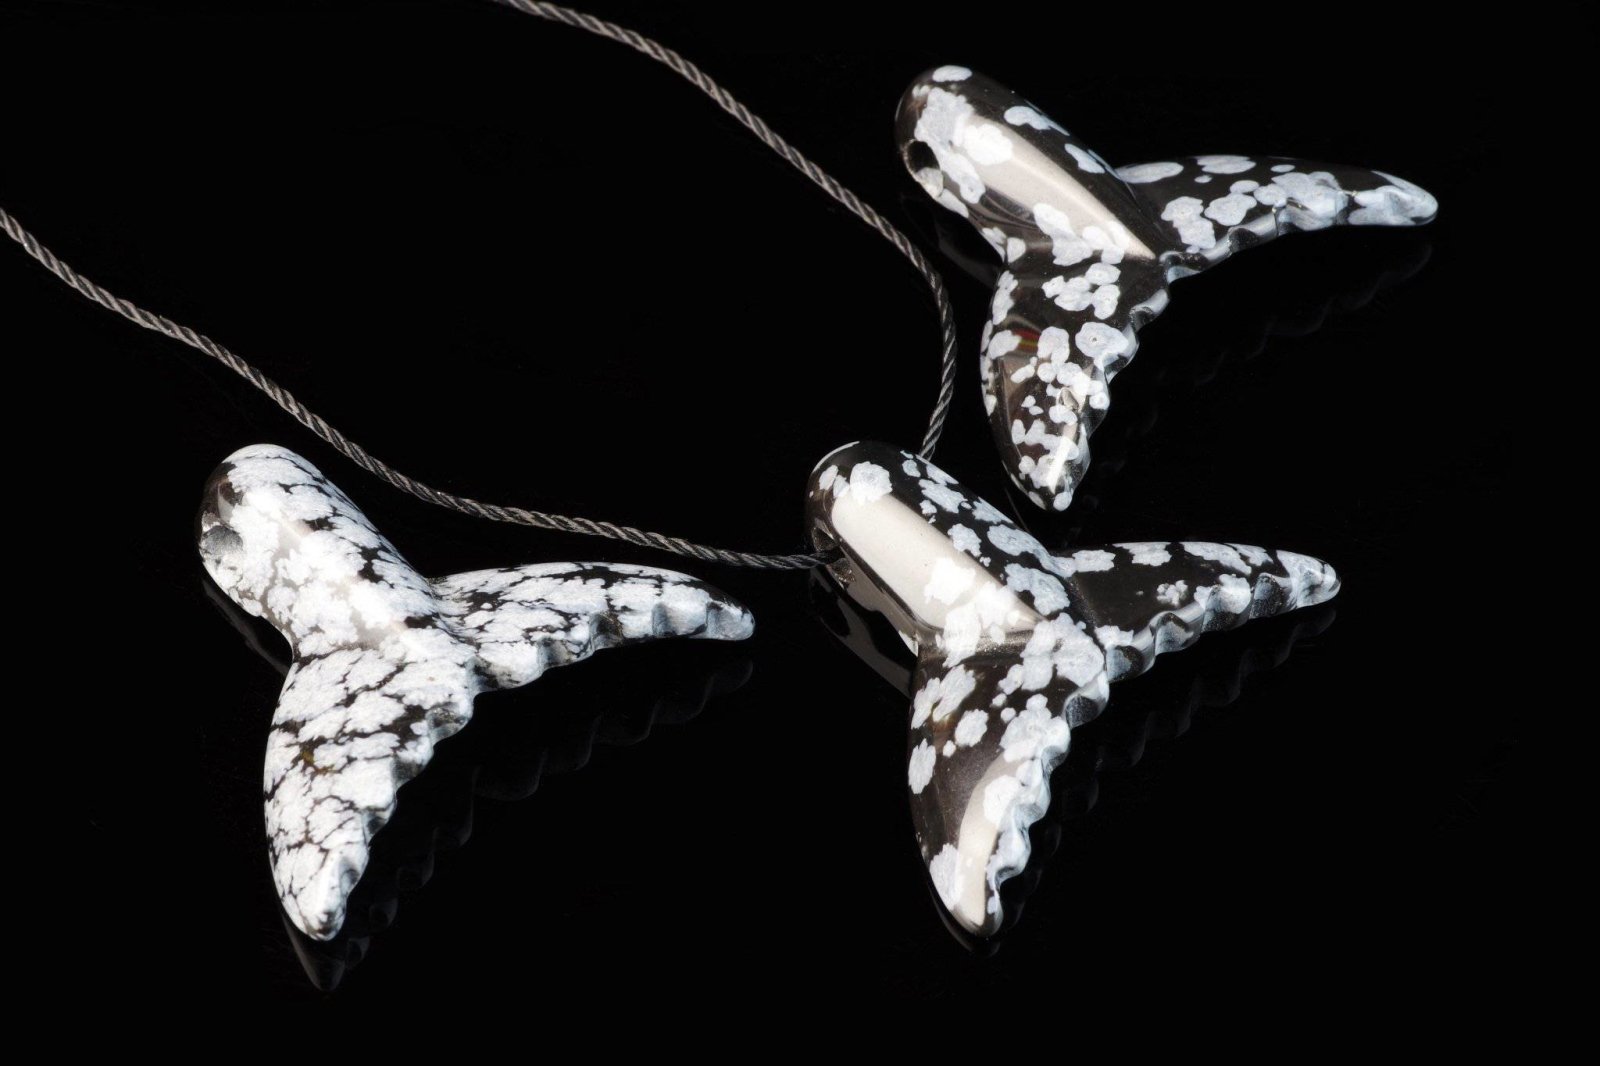 Snowflake obsidian pendant – Dolphin tail